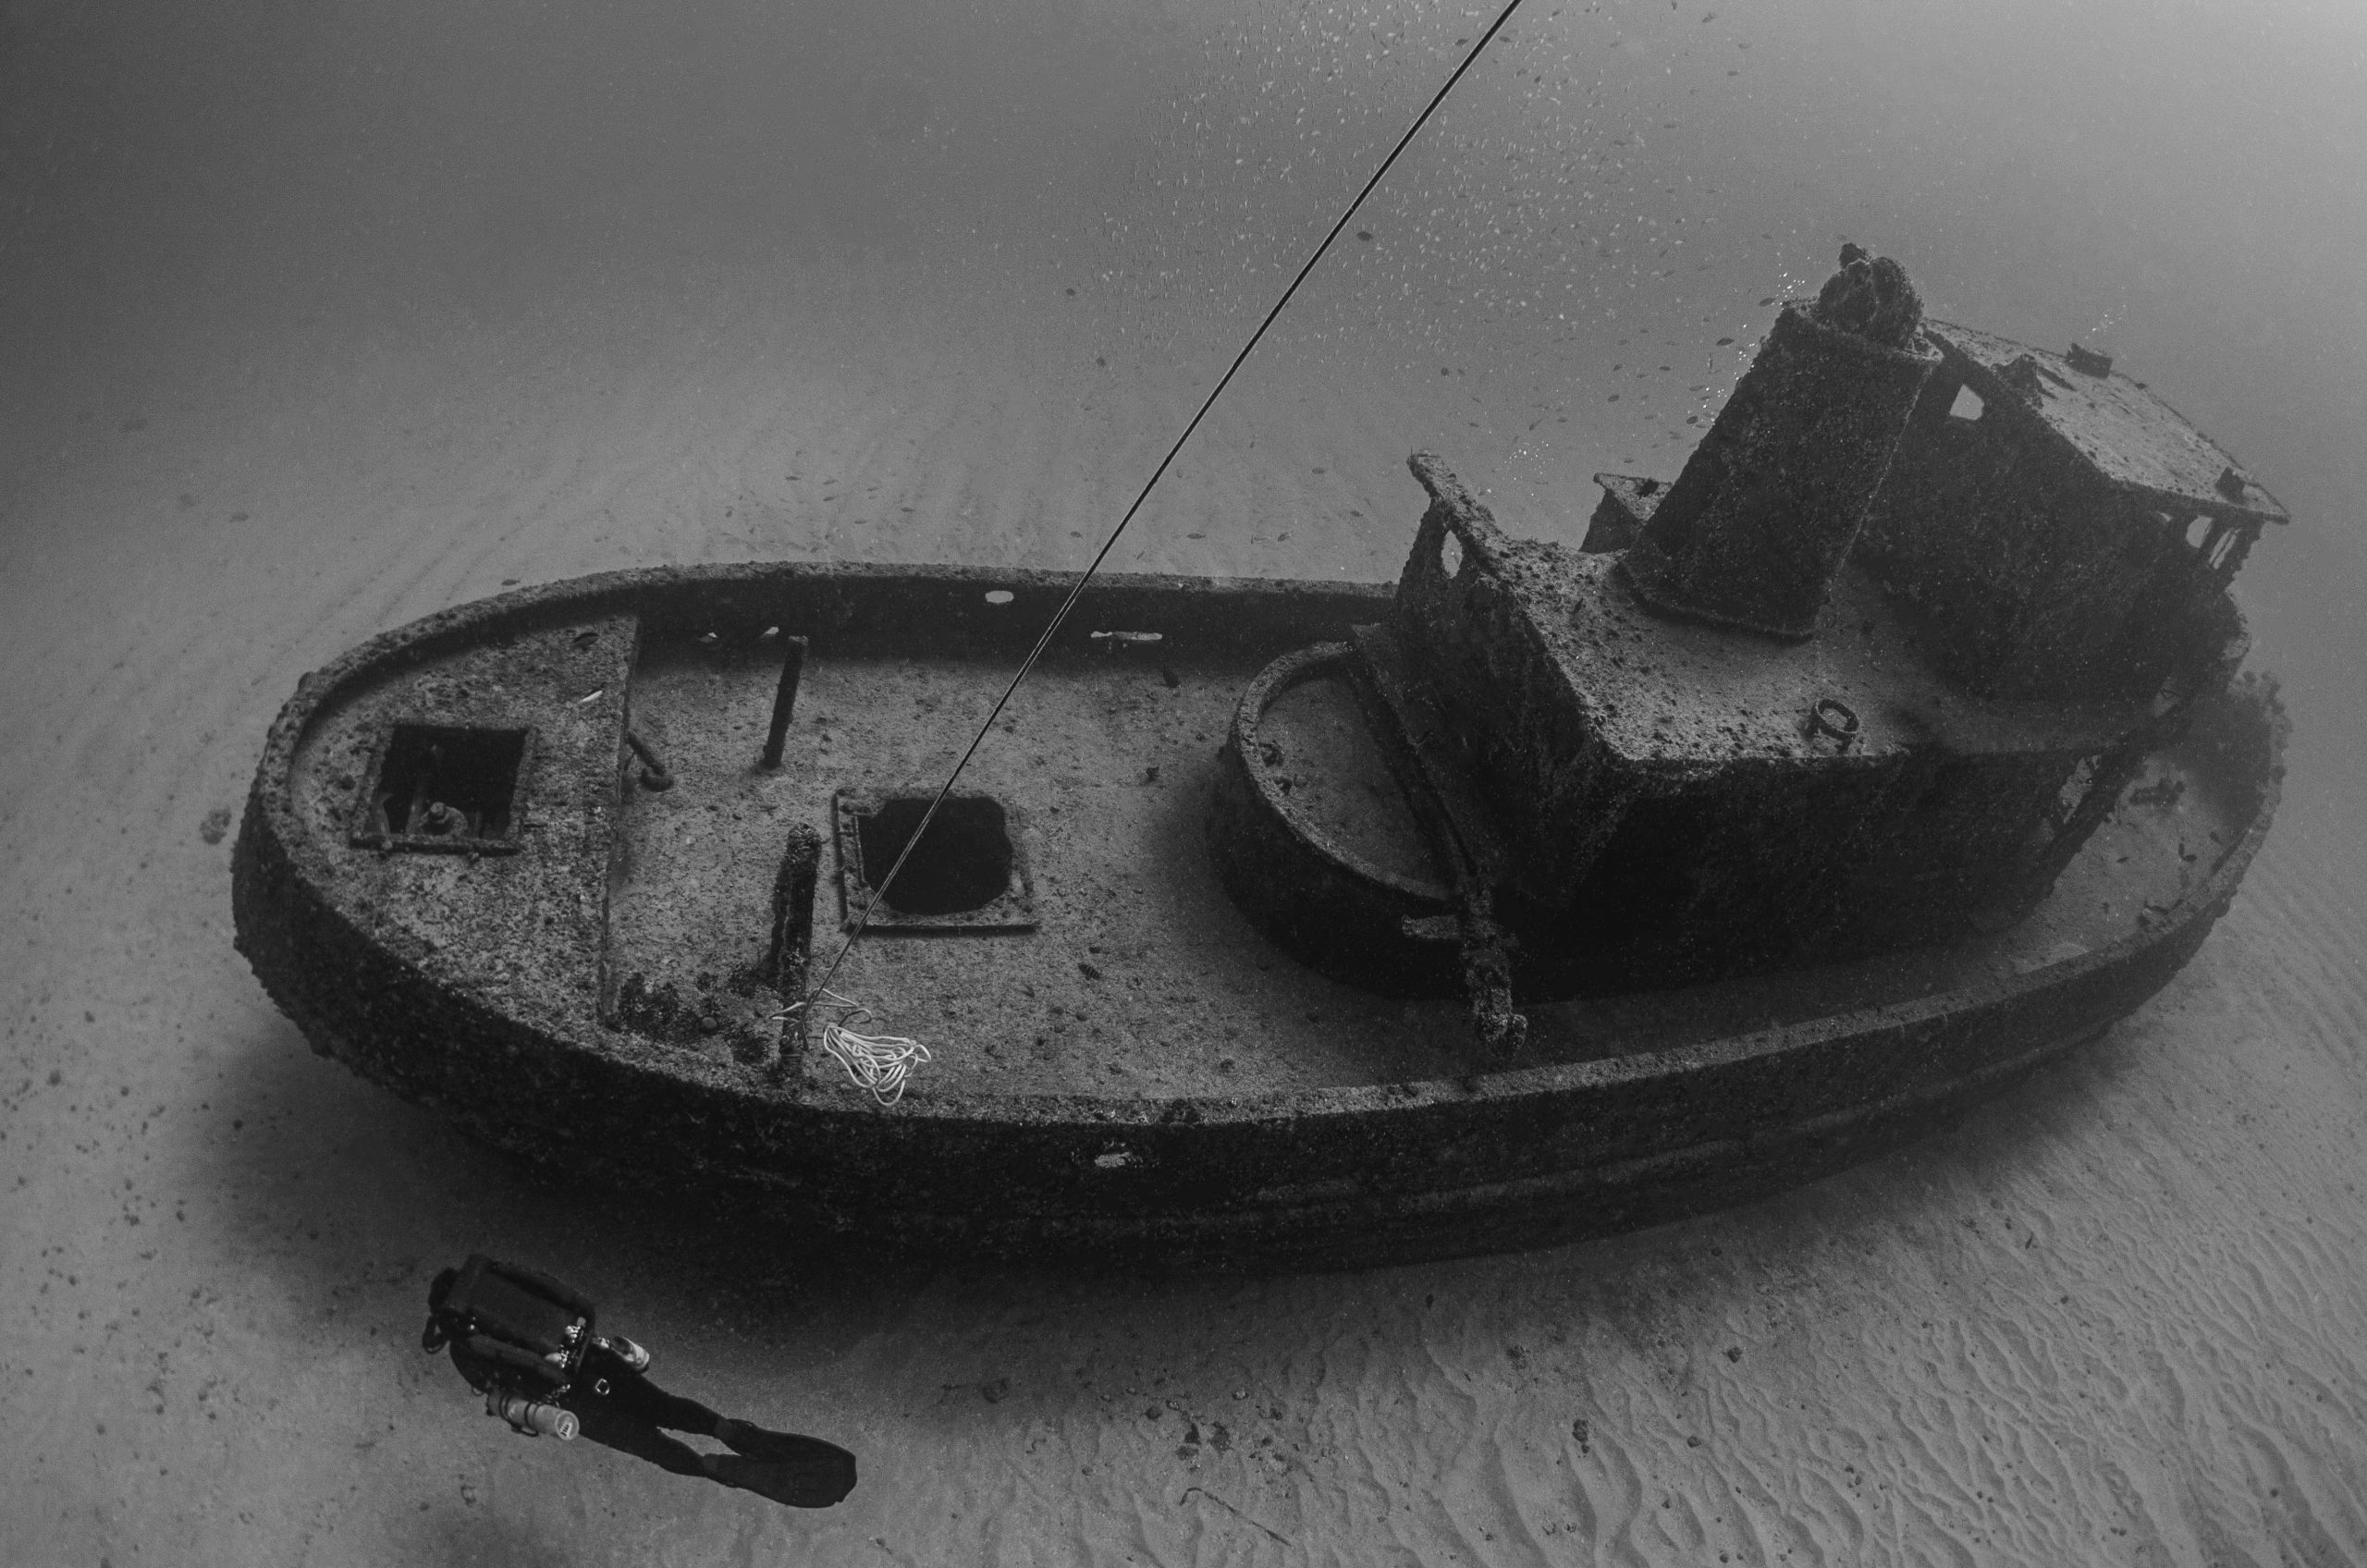 Esplorando i tesori nascosti del mare: l'archeologia sottomarina